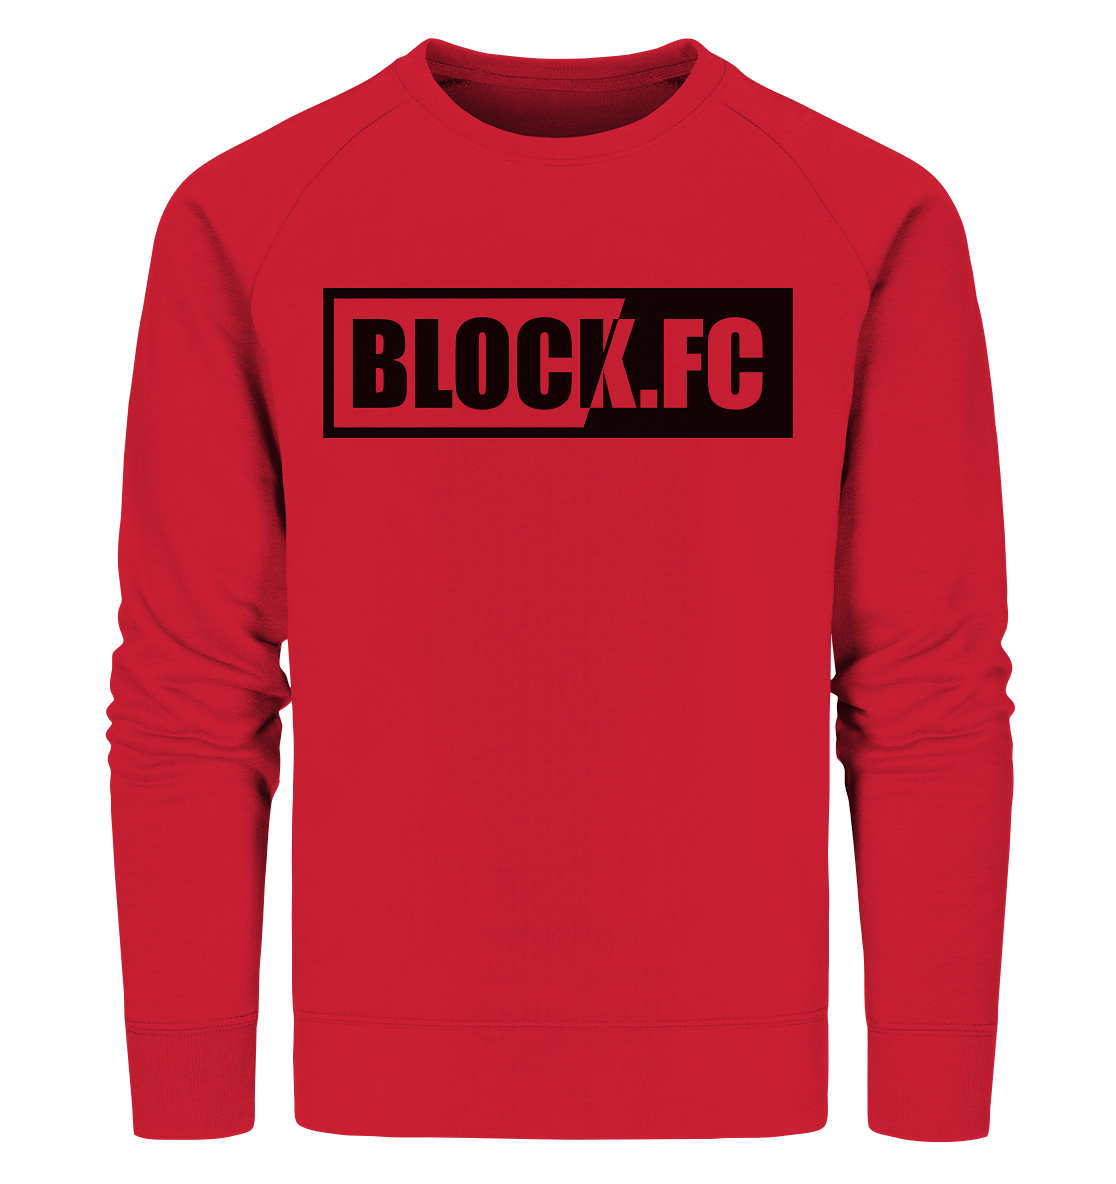 N.O.S.W. BLOCK Sweater "BLOCK.FC" Männer Organic Sweatshirt rot